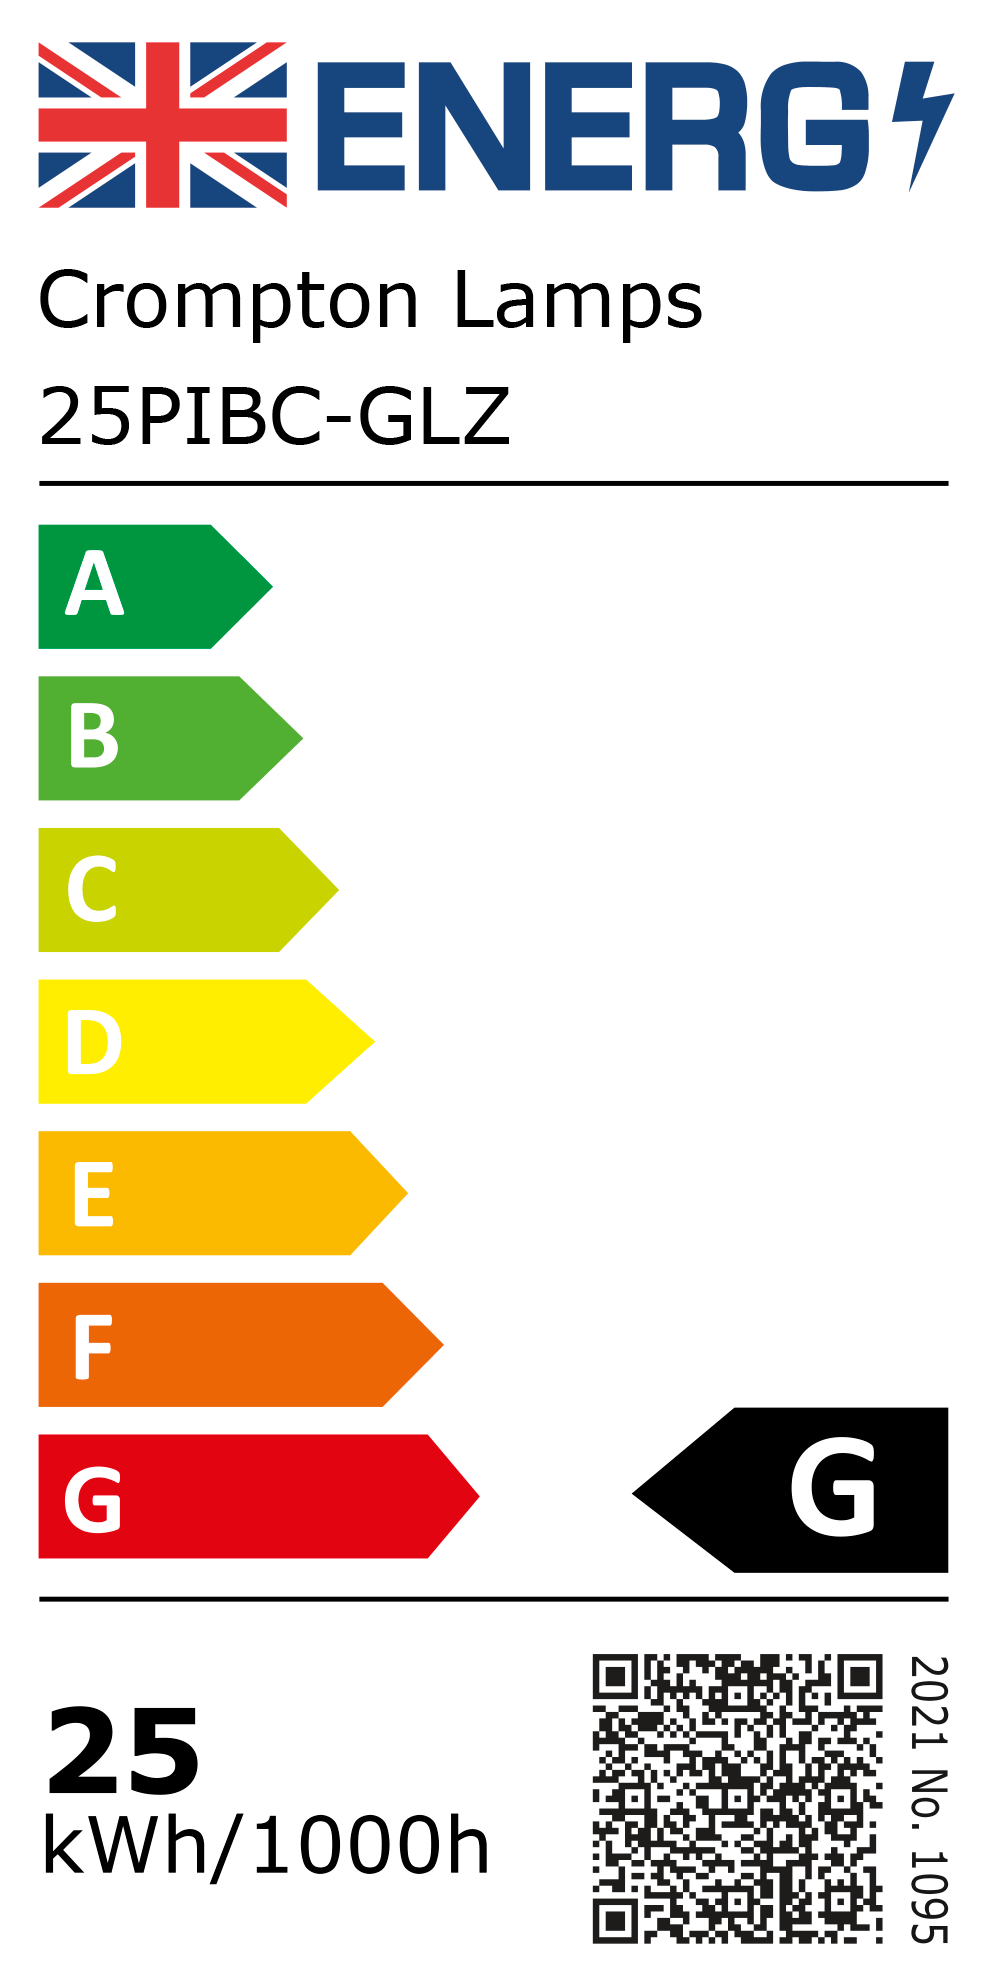 New 2021 Energy Rating Label: Stock Code 25PIBC-GLZ